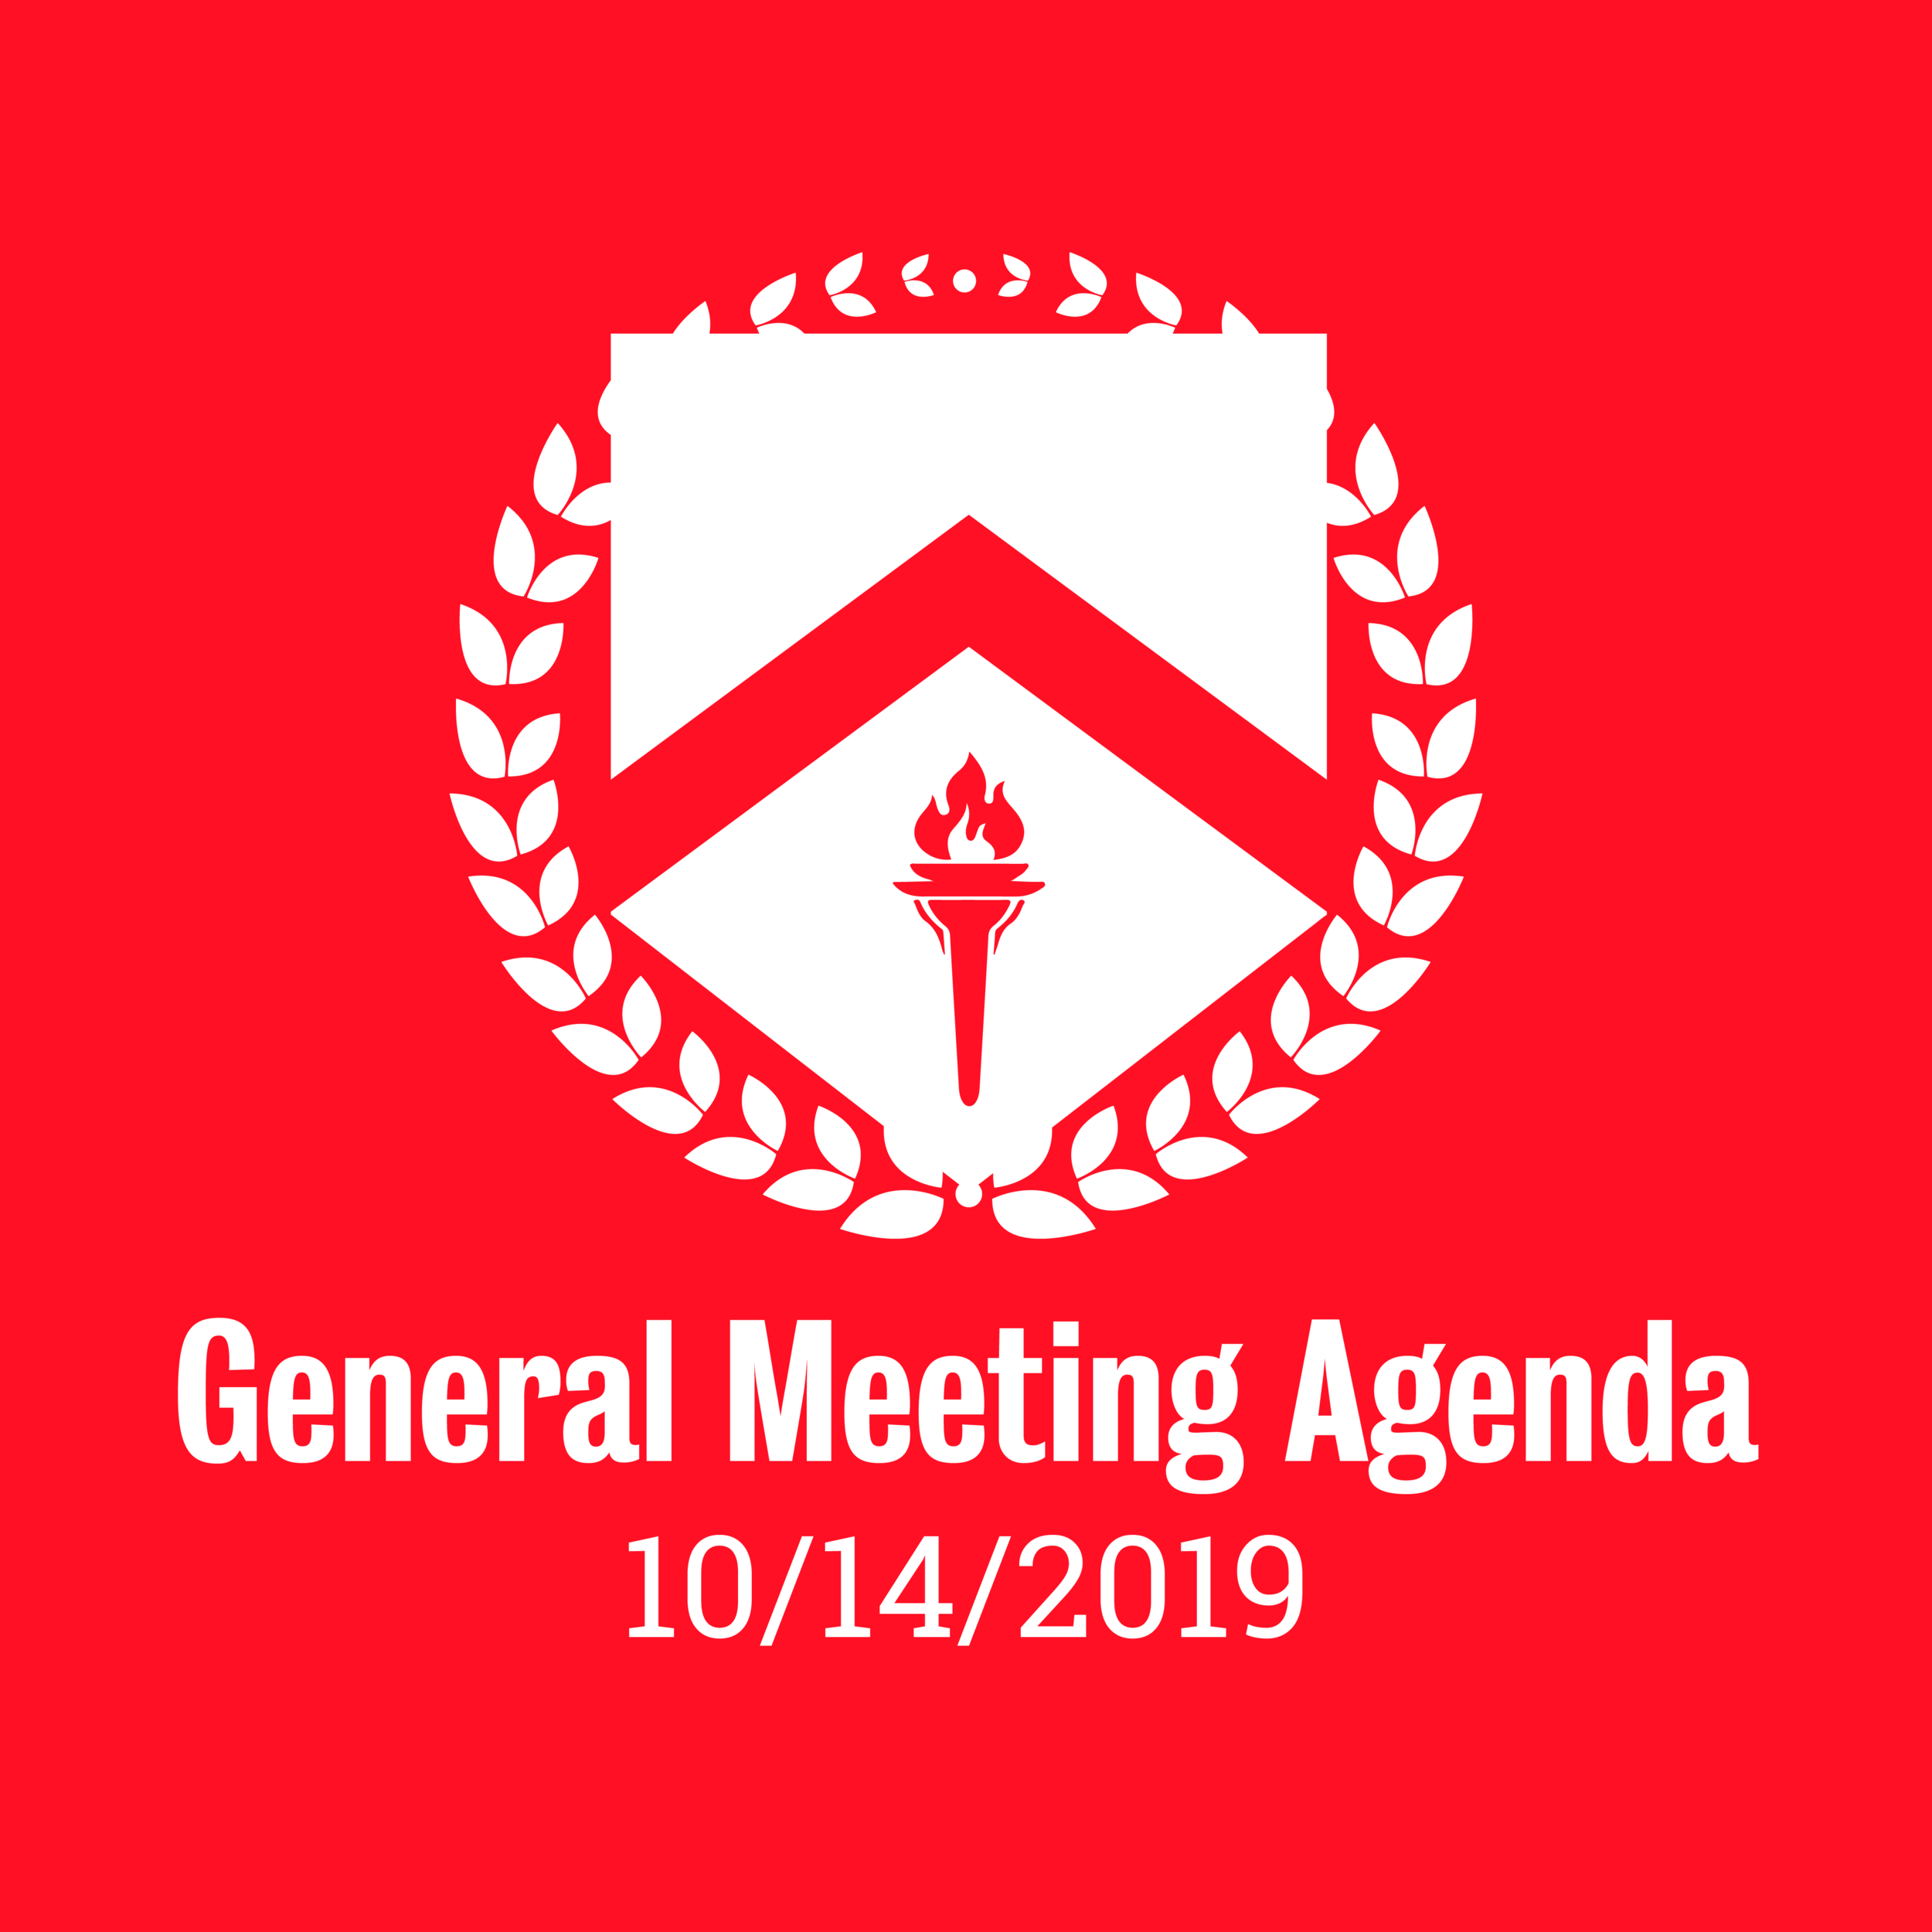 General Meeting Agenda 10/14/2019